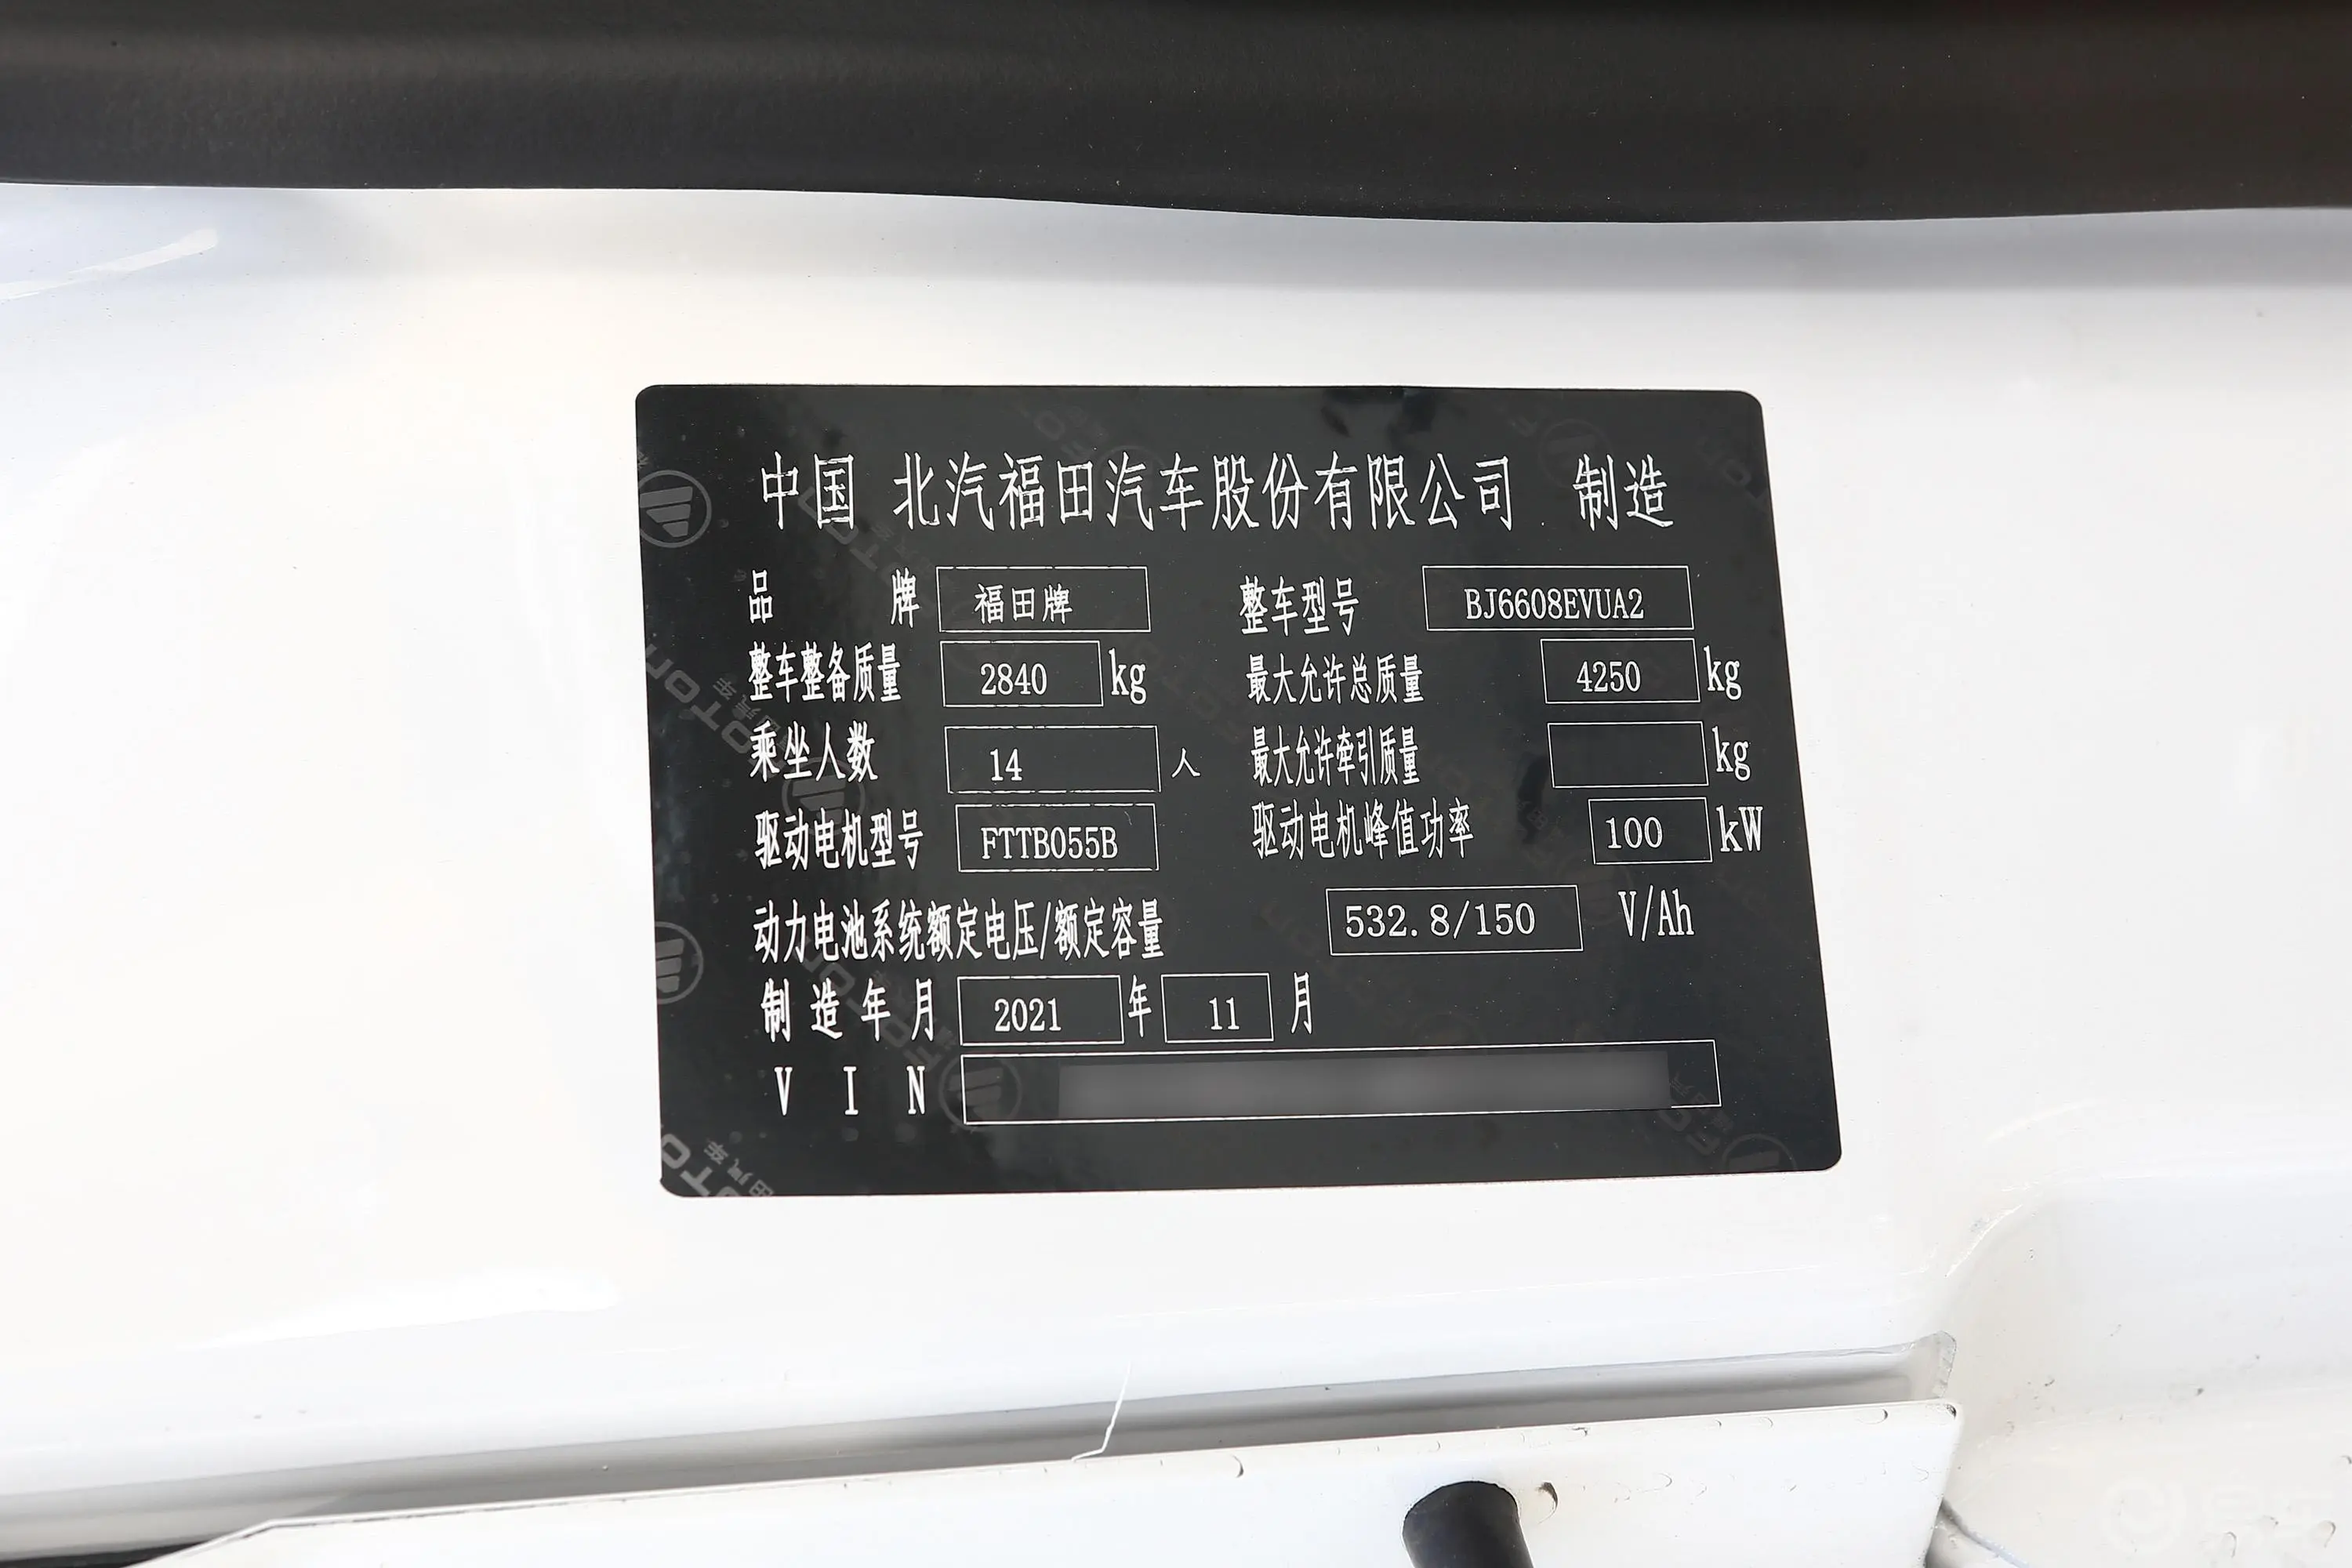 图雅诺智蓝商旅版客车 加长轴中顶 14座 79.92kWh车辆信息铭牌